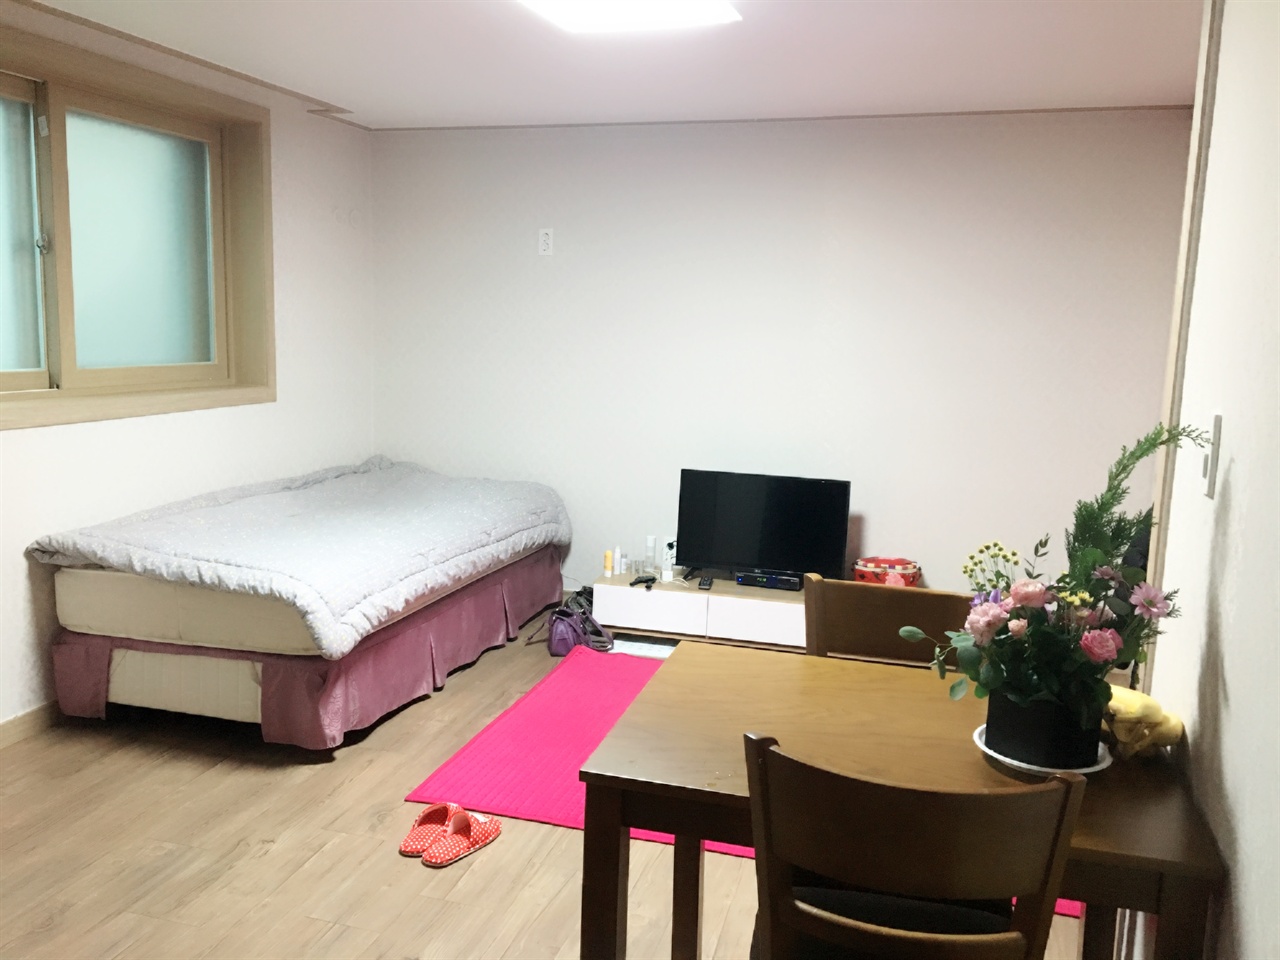 정신질환 여성노숙인을 위한 서울시 지원주택 '씨드하우스' 내부 공간. 주방과 화장실을 갖춘 원룸 형태다.  